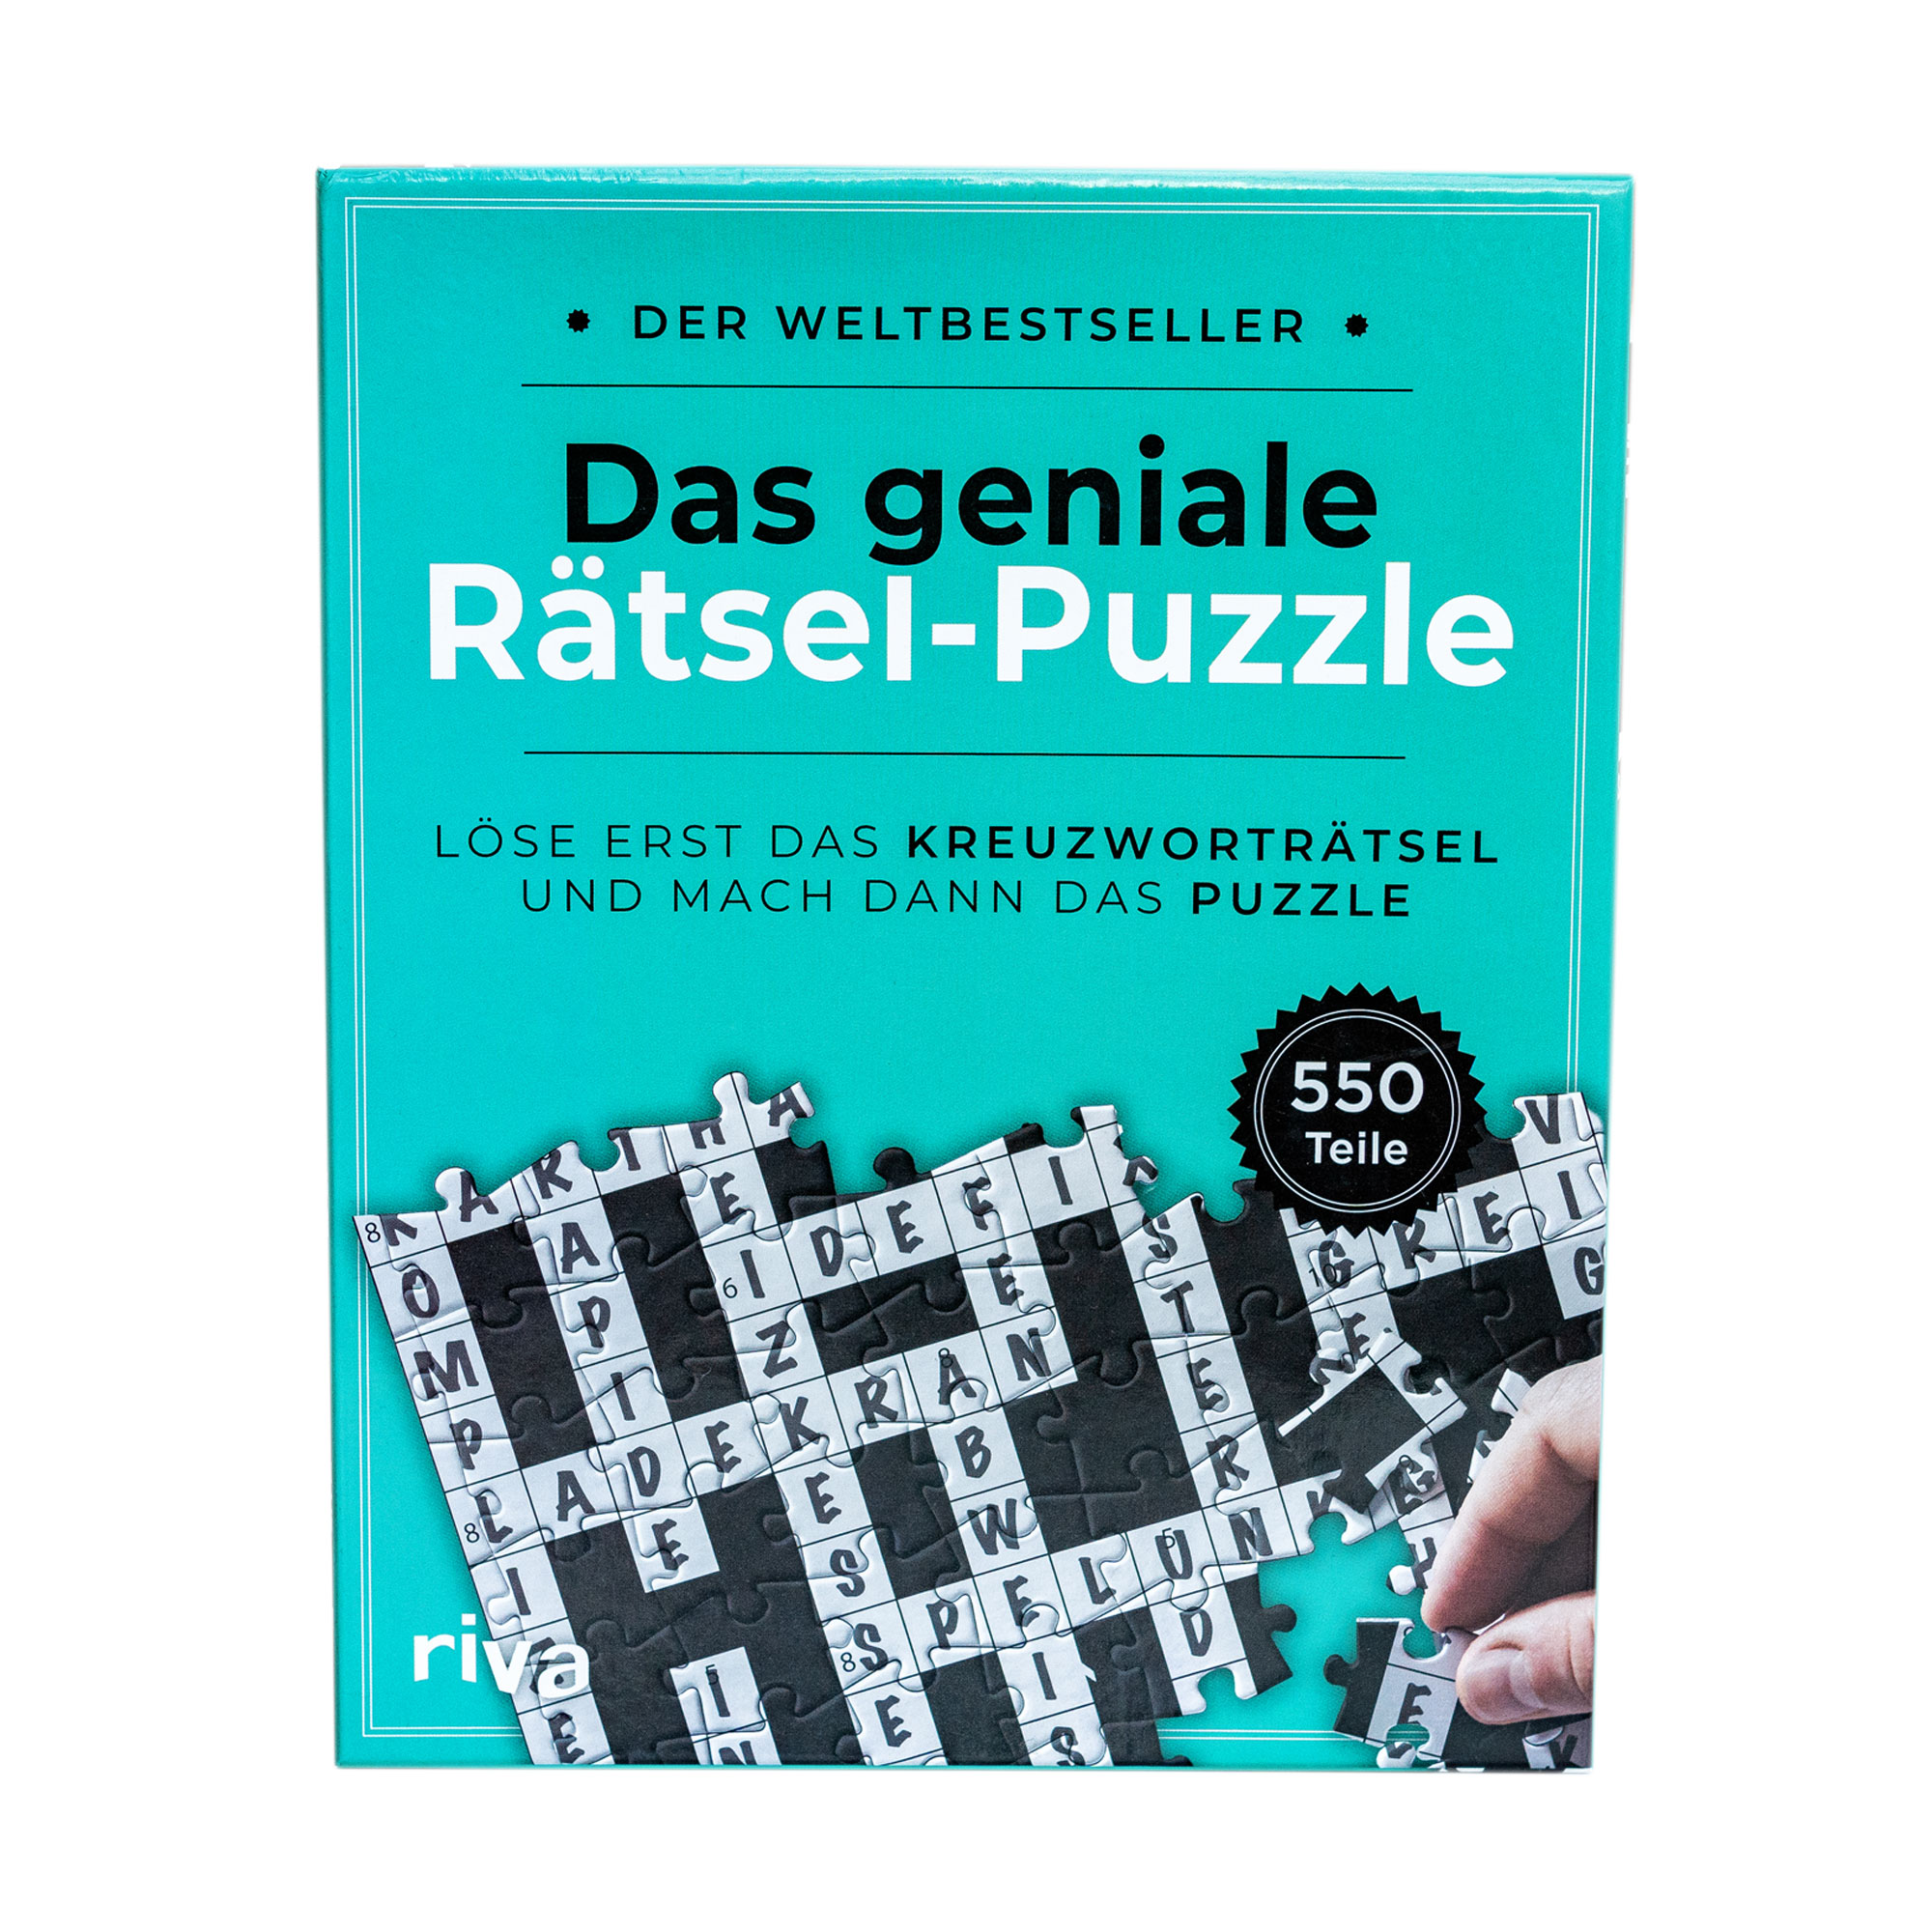 Das geniale Rätsel-Puzzle 4114 - 1